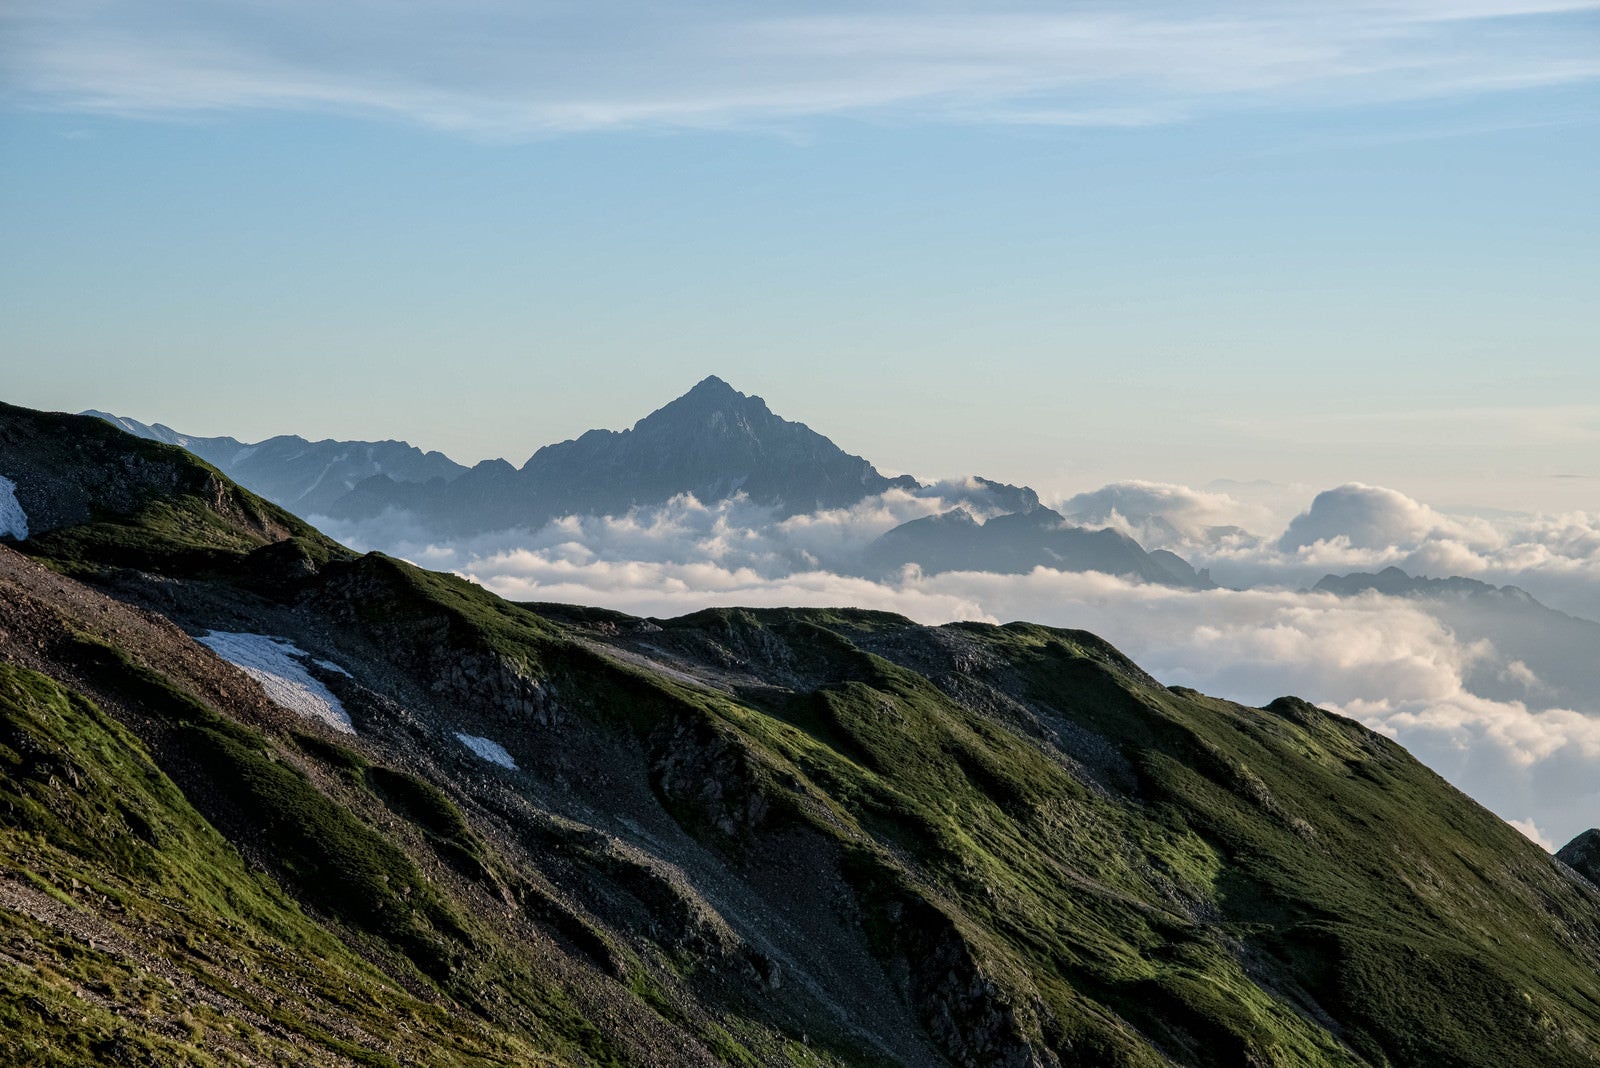 「夕焼けに染まる剱岳」の写真